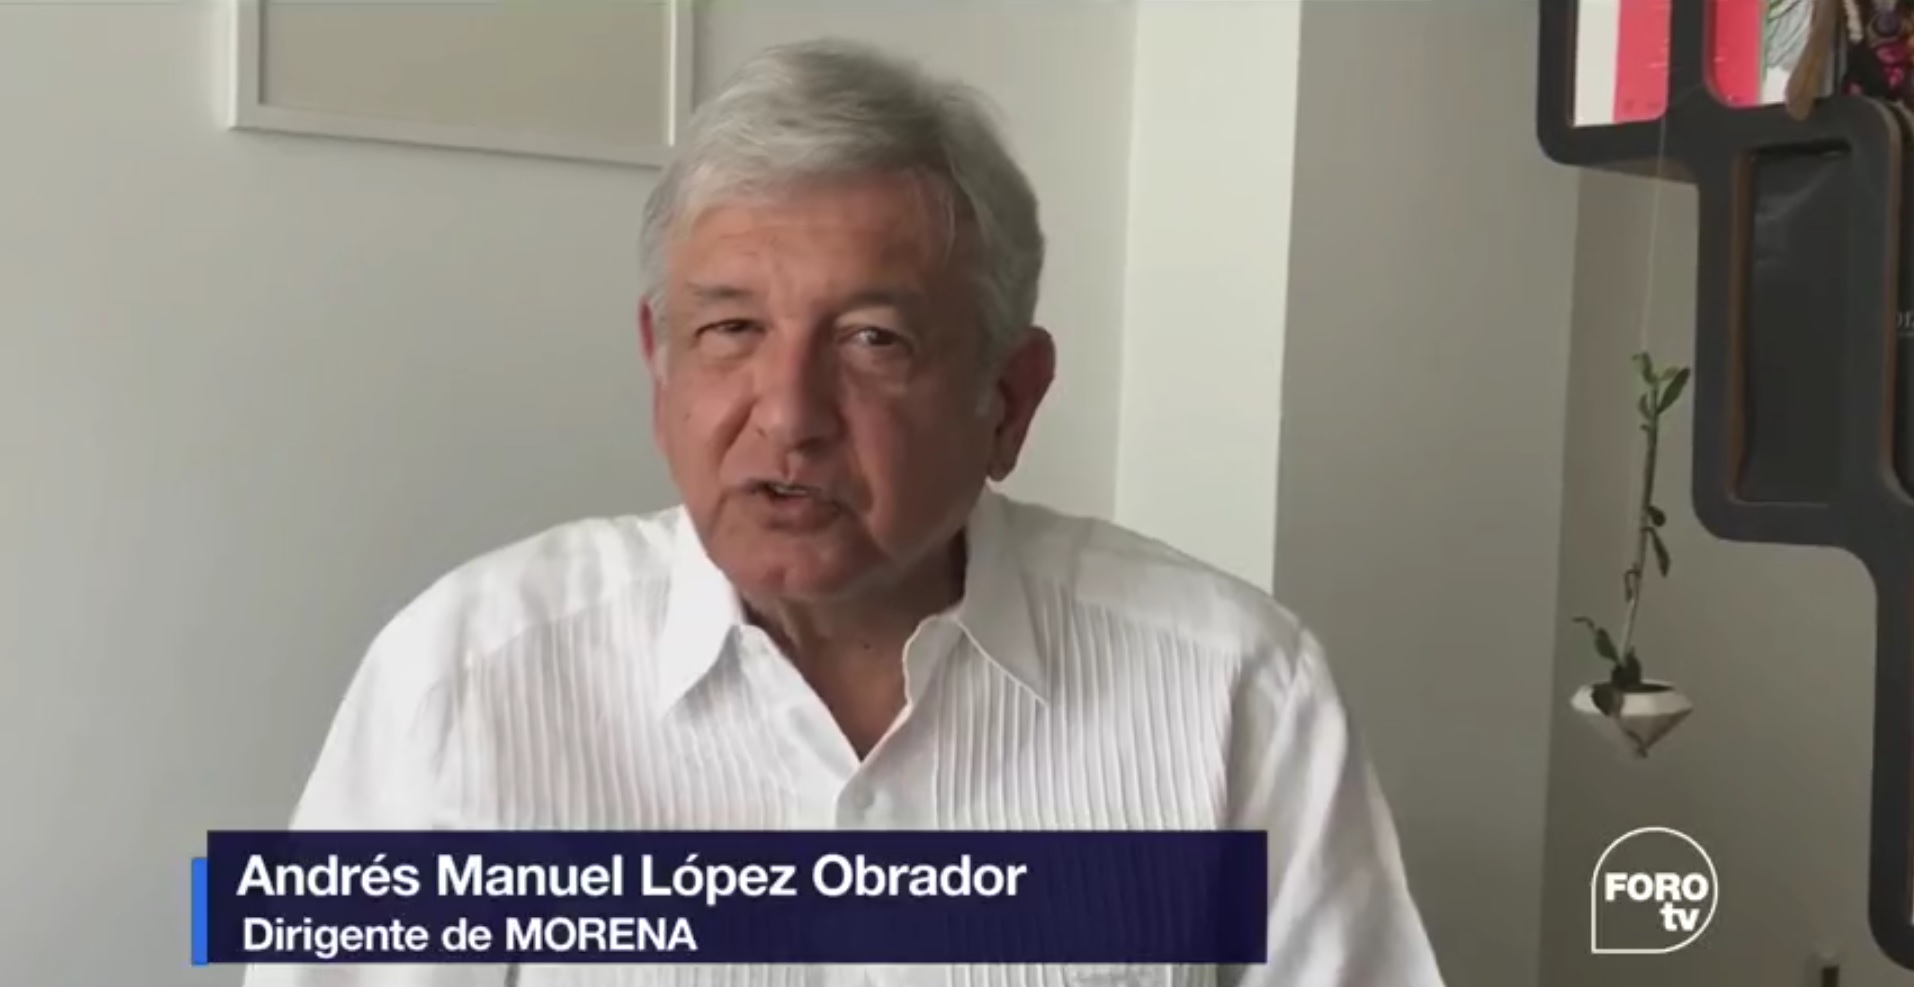 Andrés Manuel López Obrador, líder de Morena. (FOROtv)